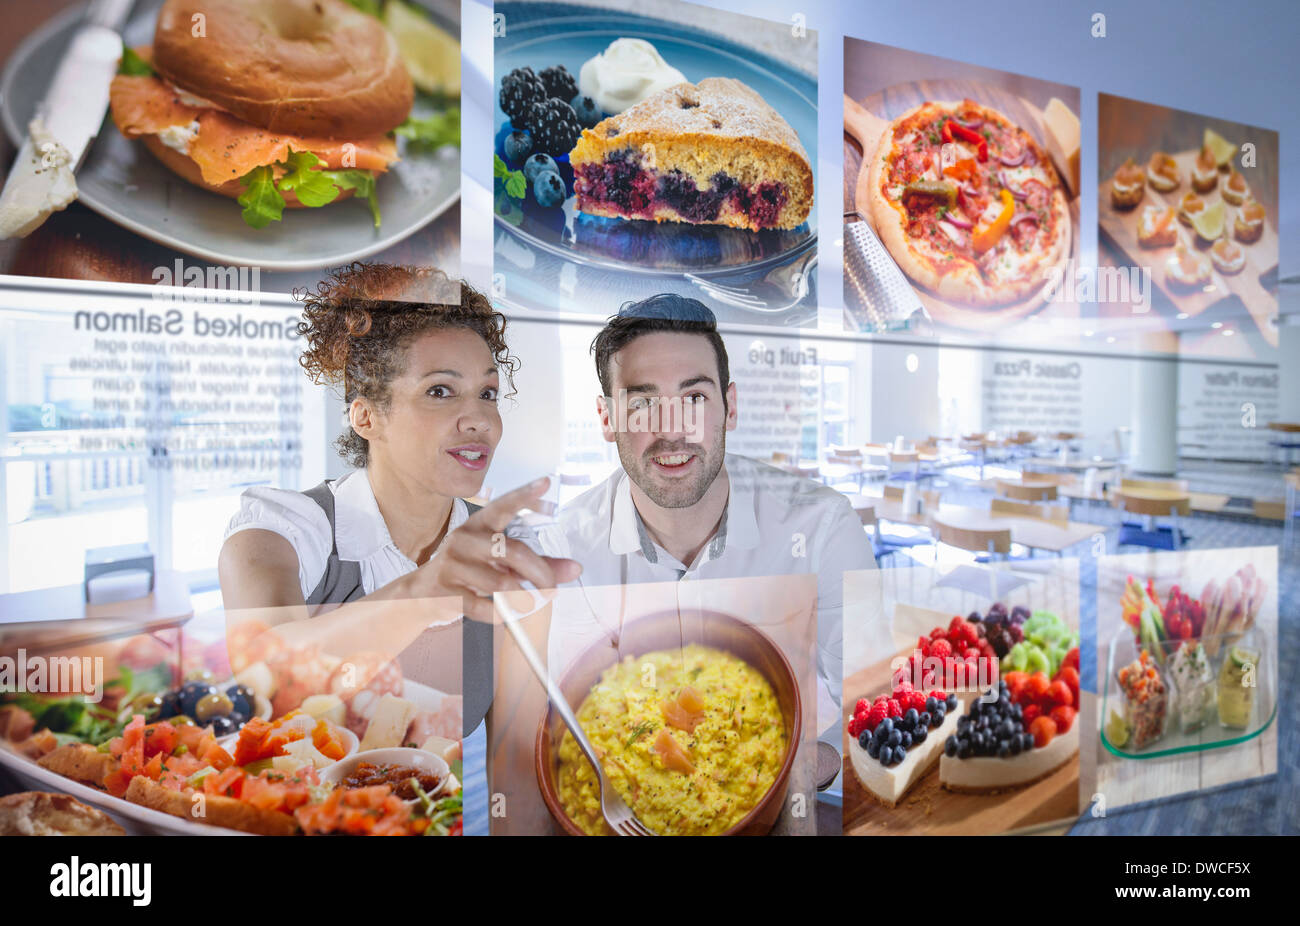 Les clients choisissent des aliments à partir de l'affichage interactif dans office canteen Banque D'Images